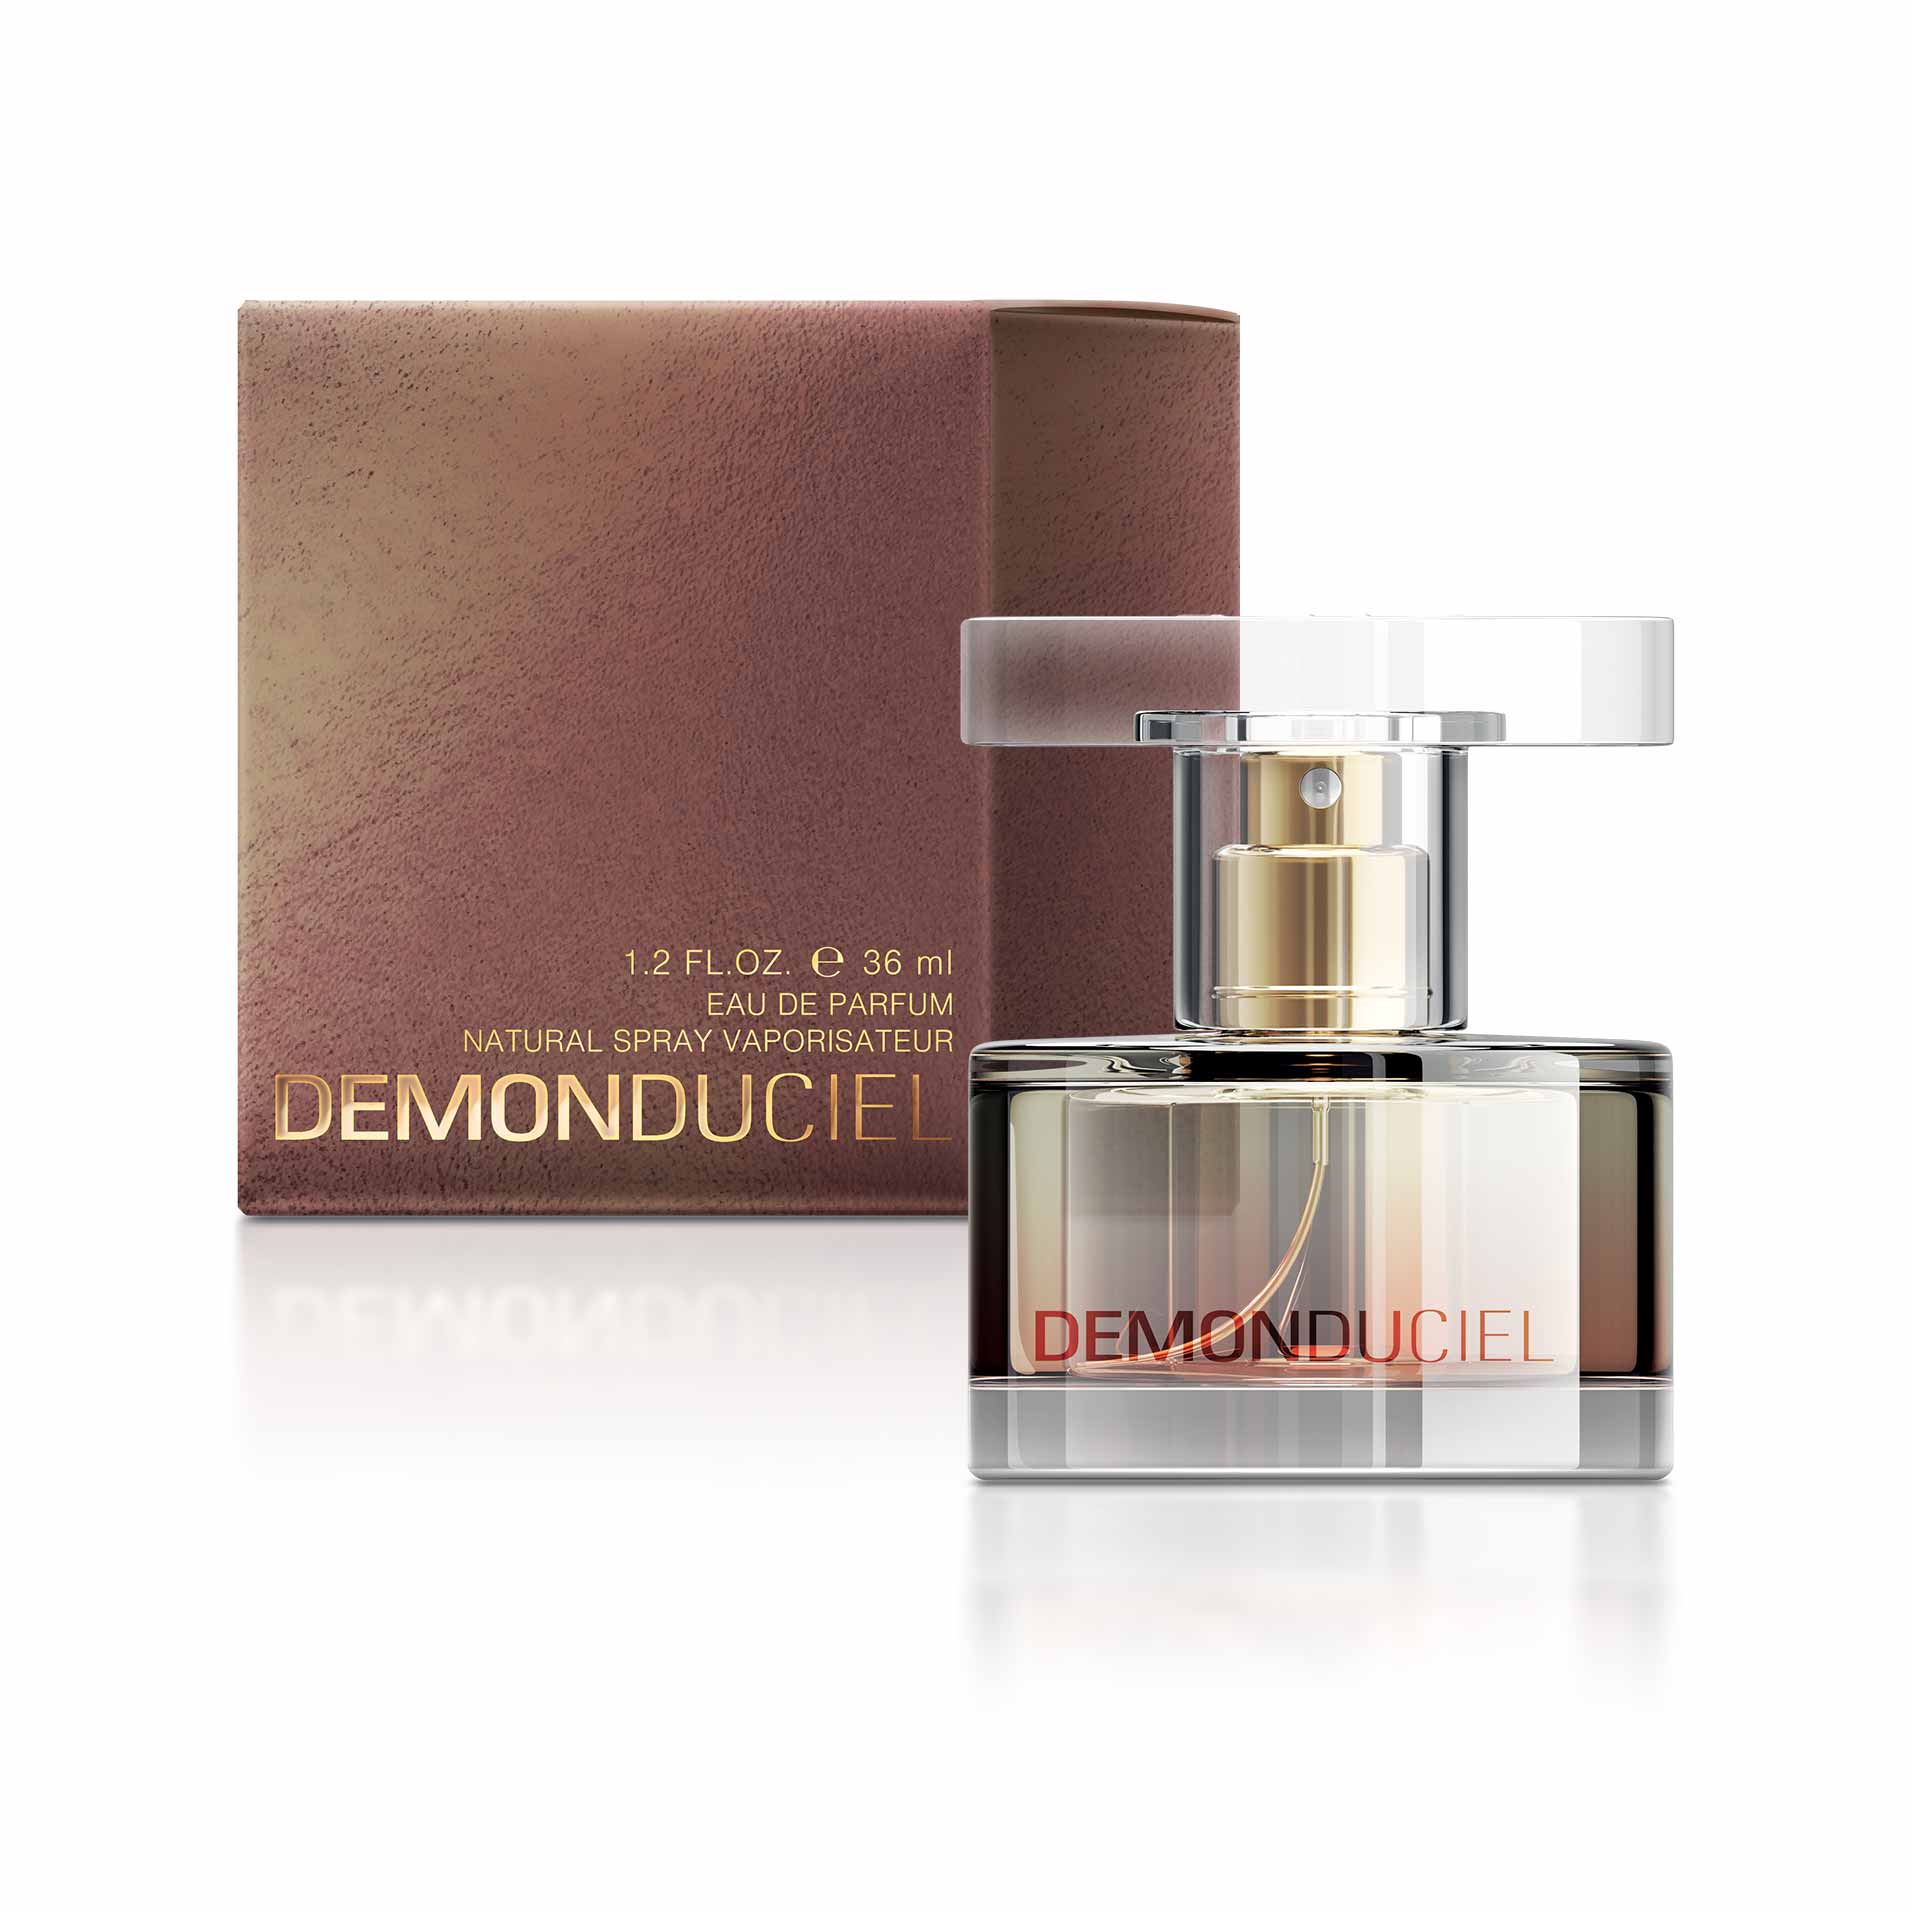 Изображение отсутствует.
			Купить Demon du Ciel, парфюмерная вода для женщин - Коллекция ароматов Ciel //  // 